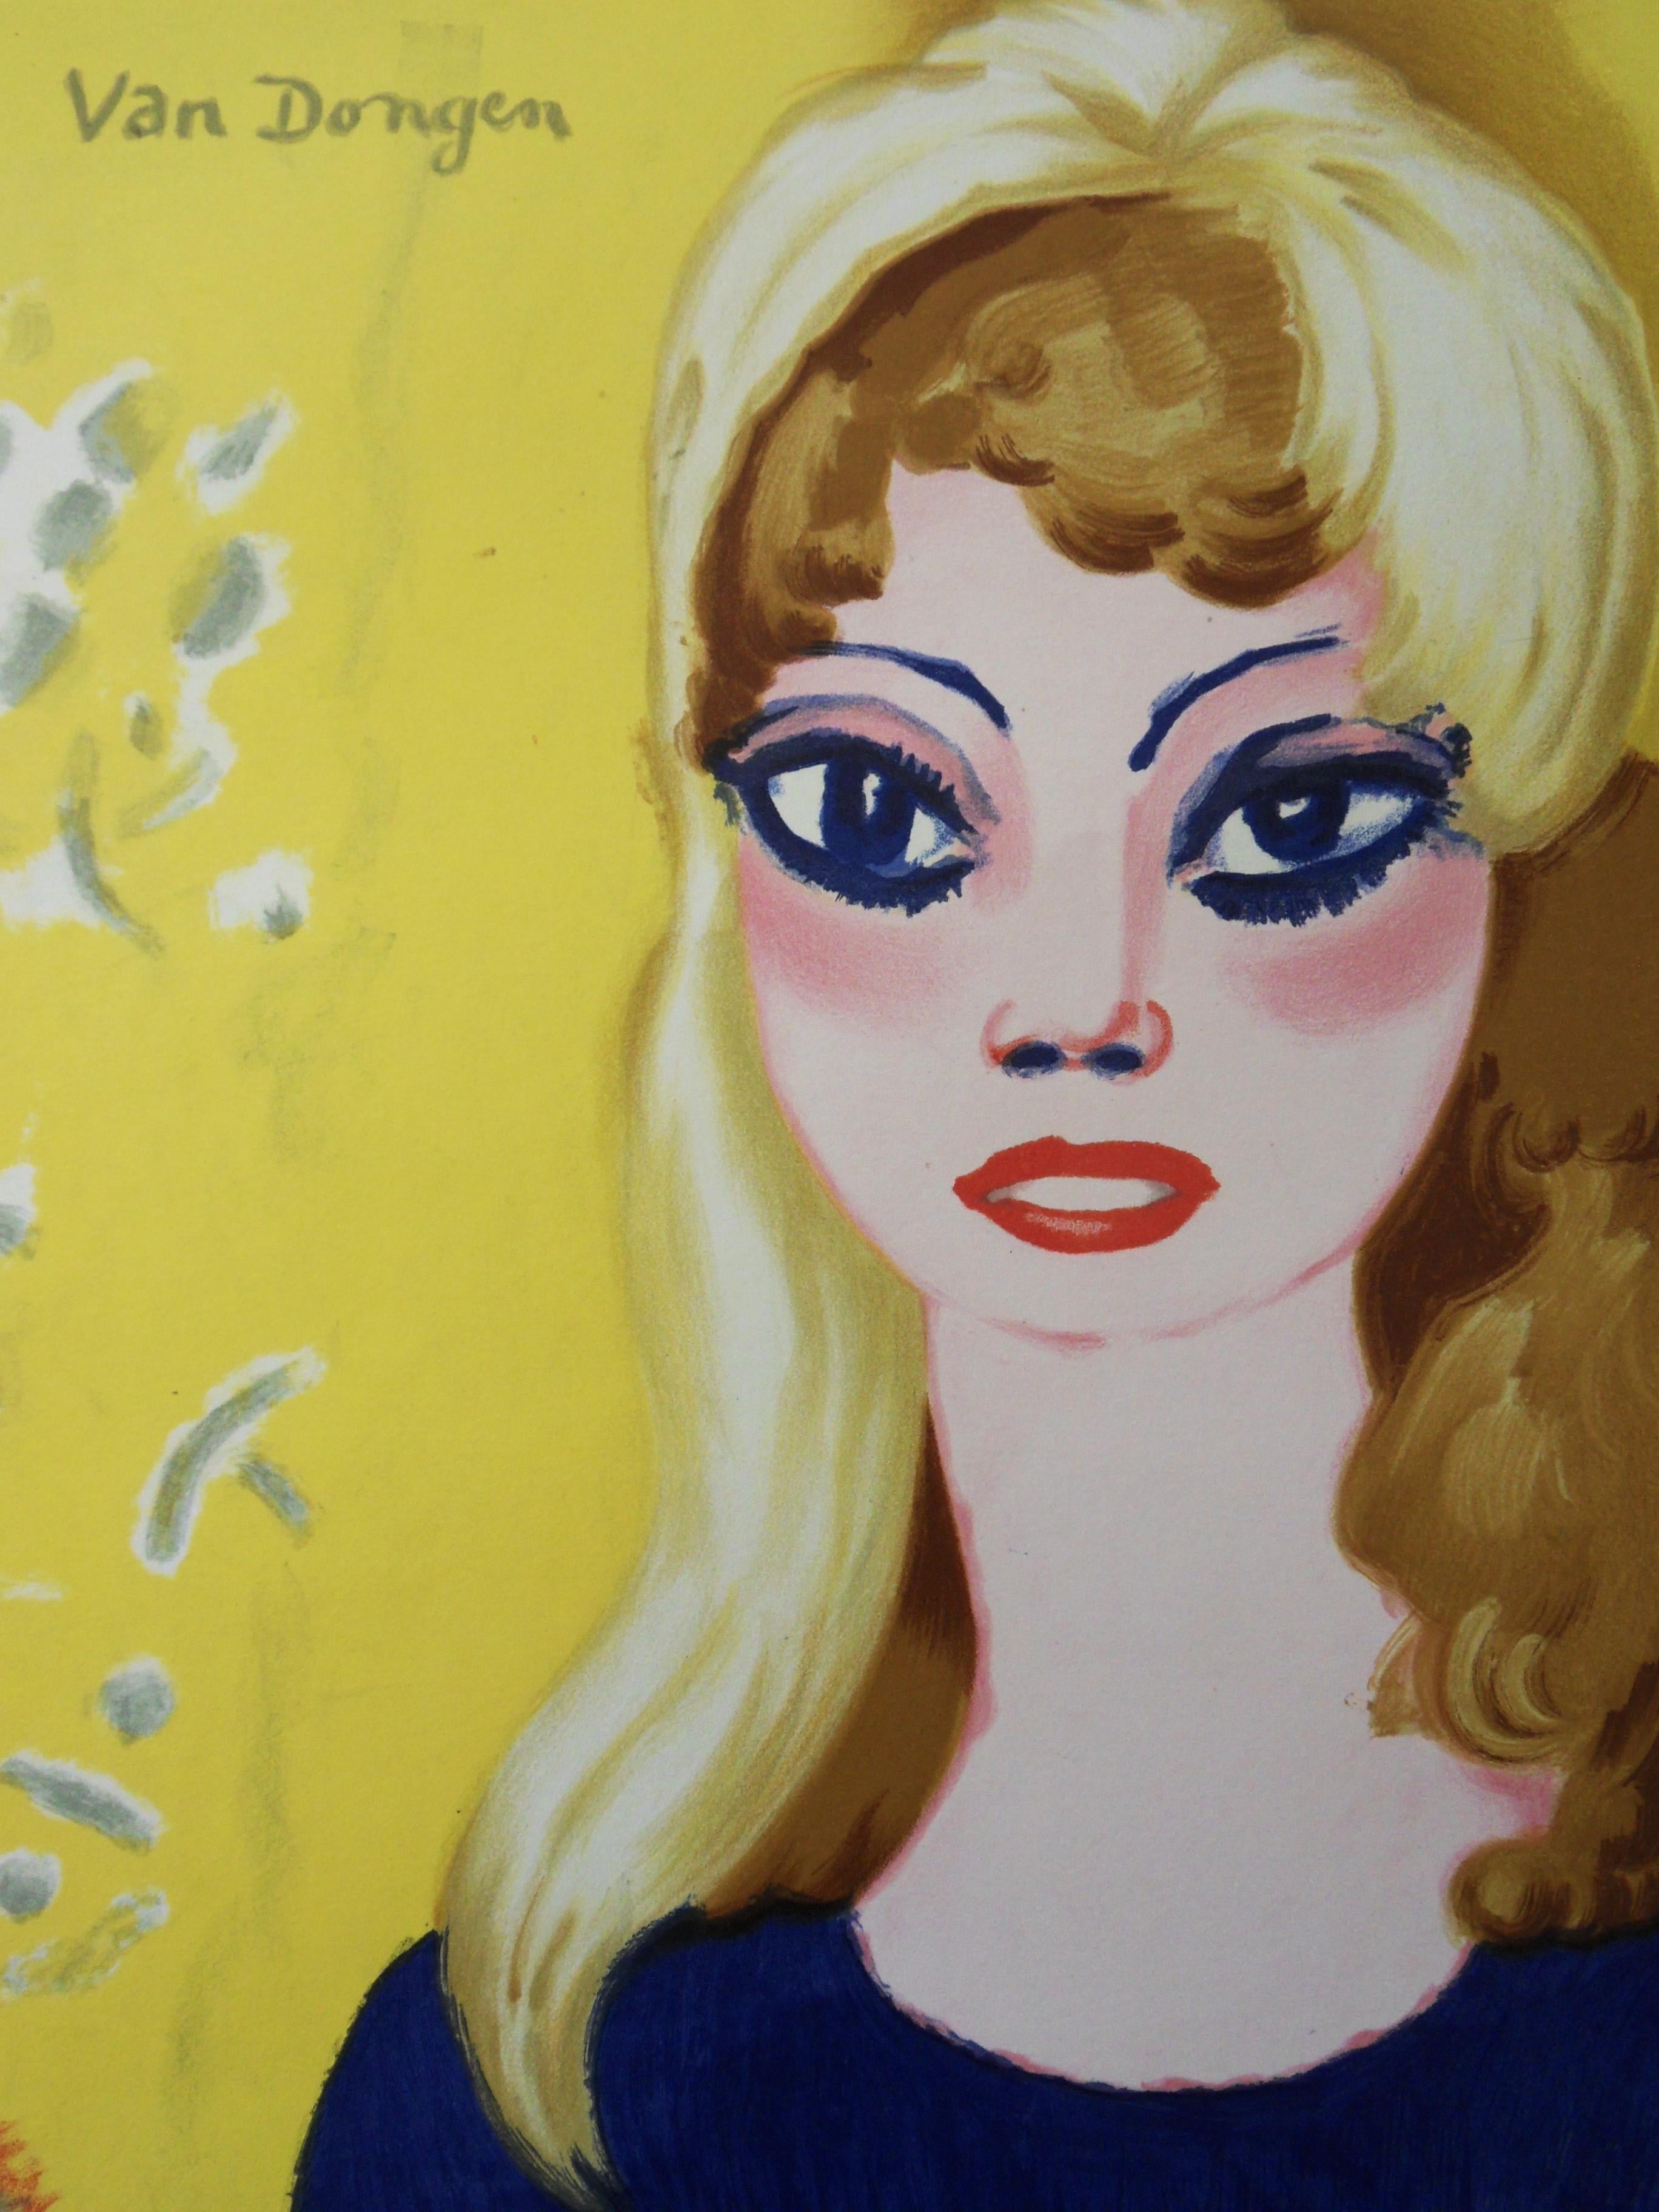 Brigitte Bardot : Blond Woman with Tall Eyes - Original lithograph, Mourlot 1964 - Print by Kees van Dongen